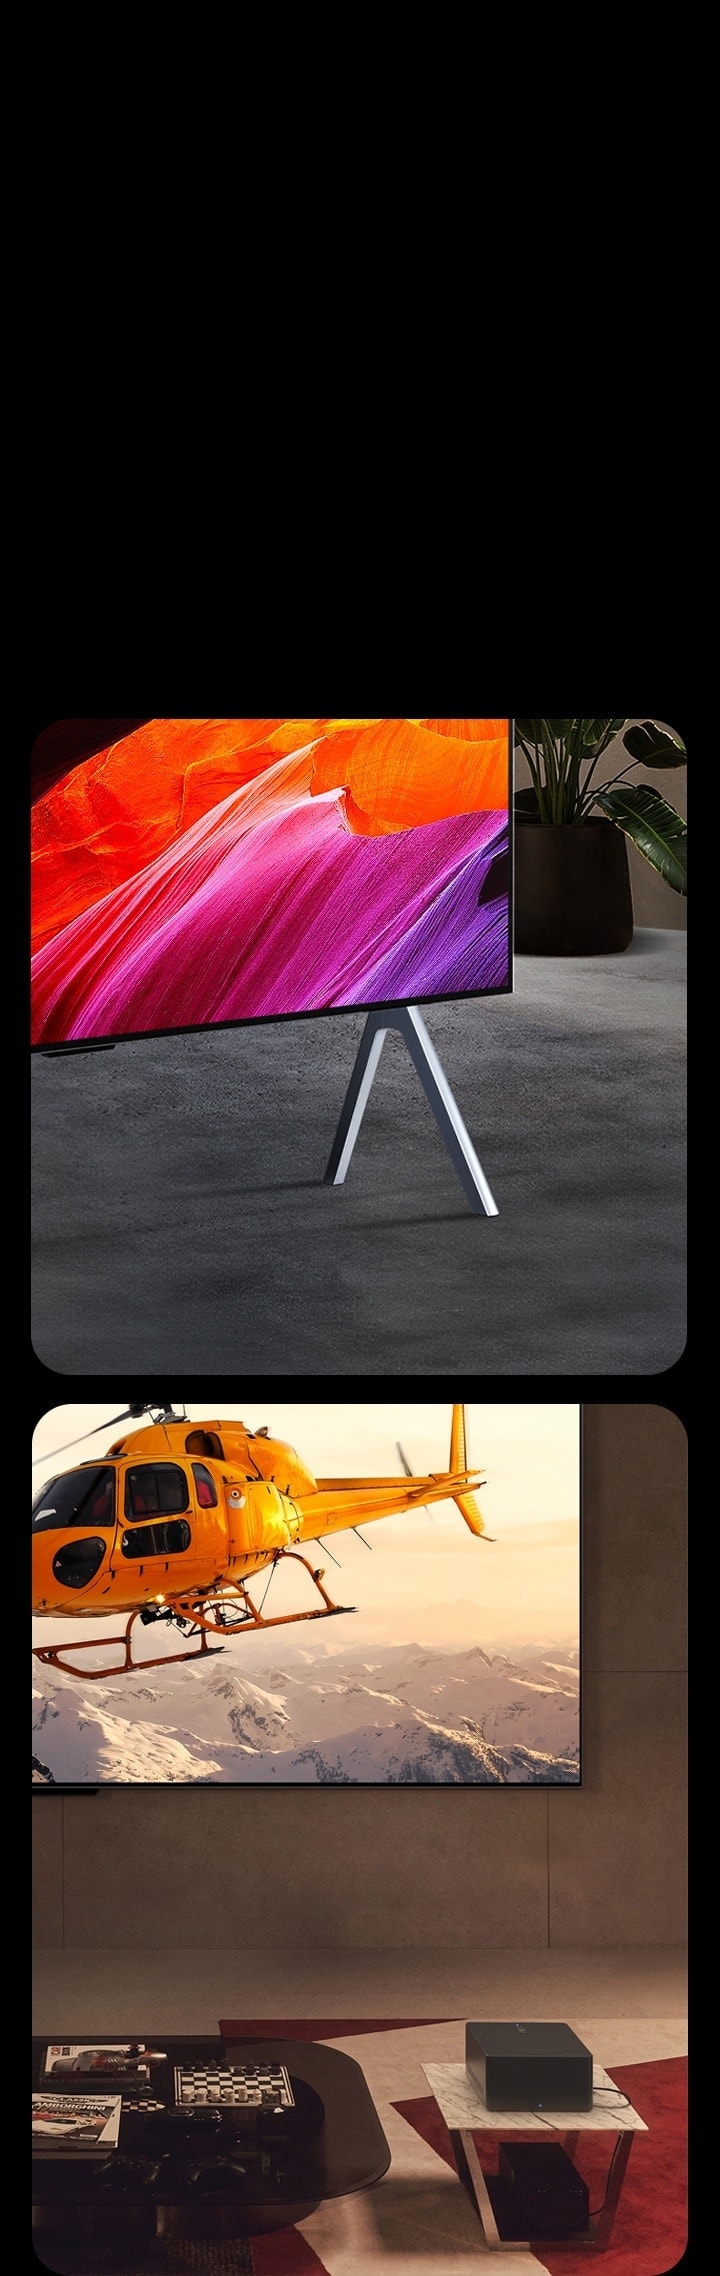 左邊顯示支架上 LG SIGNATURE OLED M4 的特寫角度透視圖，螢幕上是抽象的粉紅色和橙色藝術作品。右邊顯示掛牆安裝的 LG SIGNATURE OLED M4，前面的小桌子上擺放著 Zero Connect Box，畫面顯示雪山上空橙色直升機的明亮圖像。